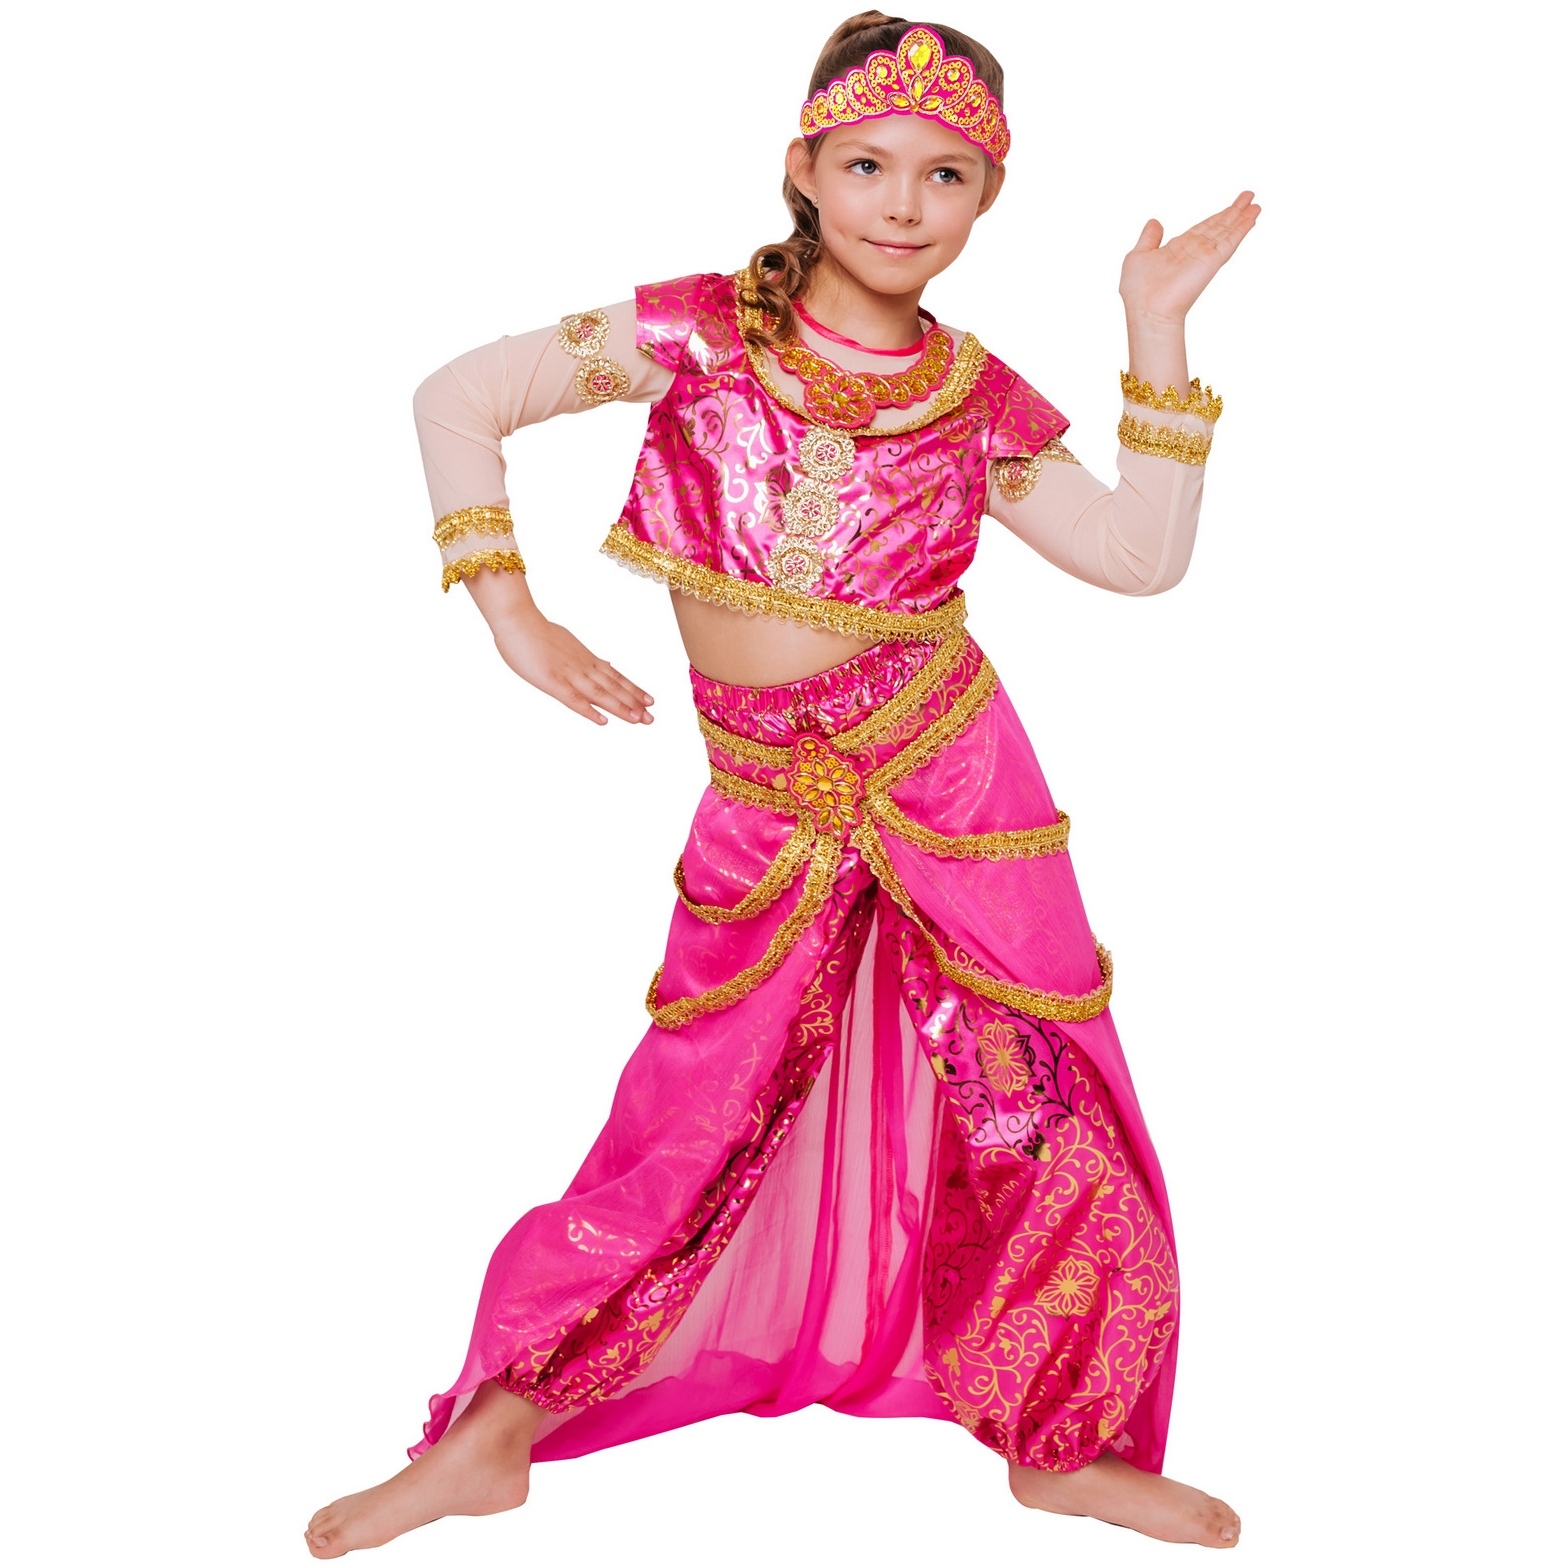 Карнавальный костюм "Принцесса востока" (топ, шаровары, юбка, диадема) размер 128-64